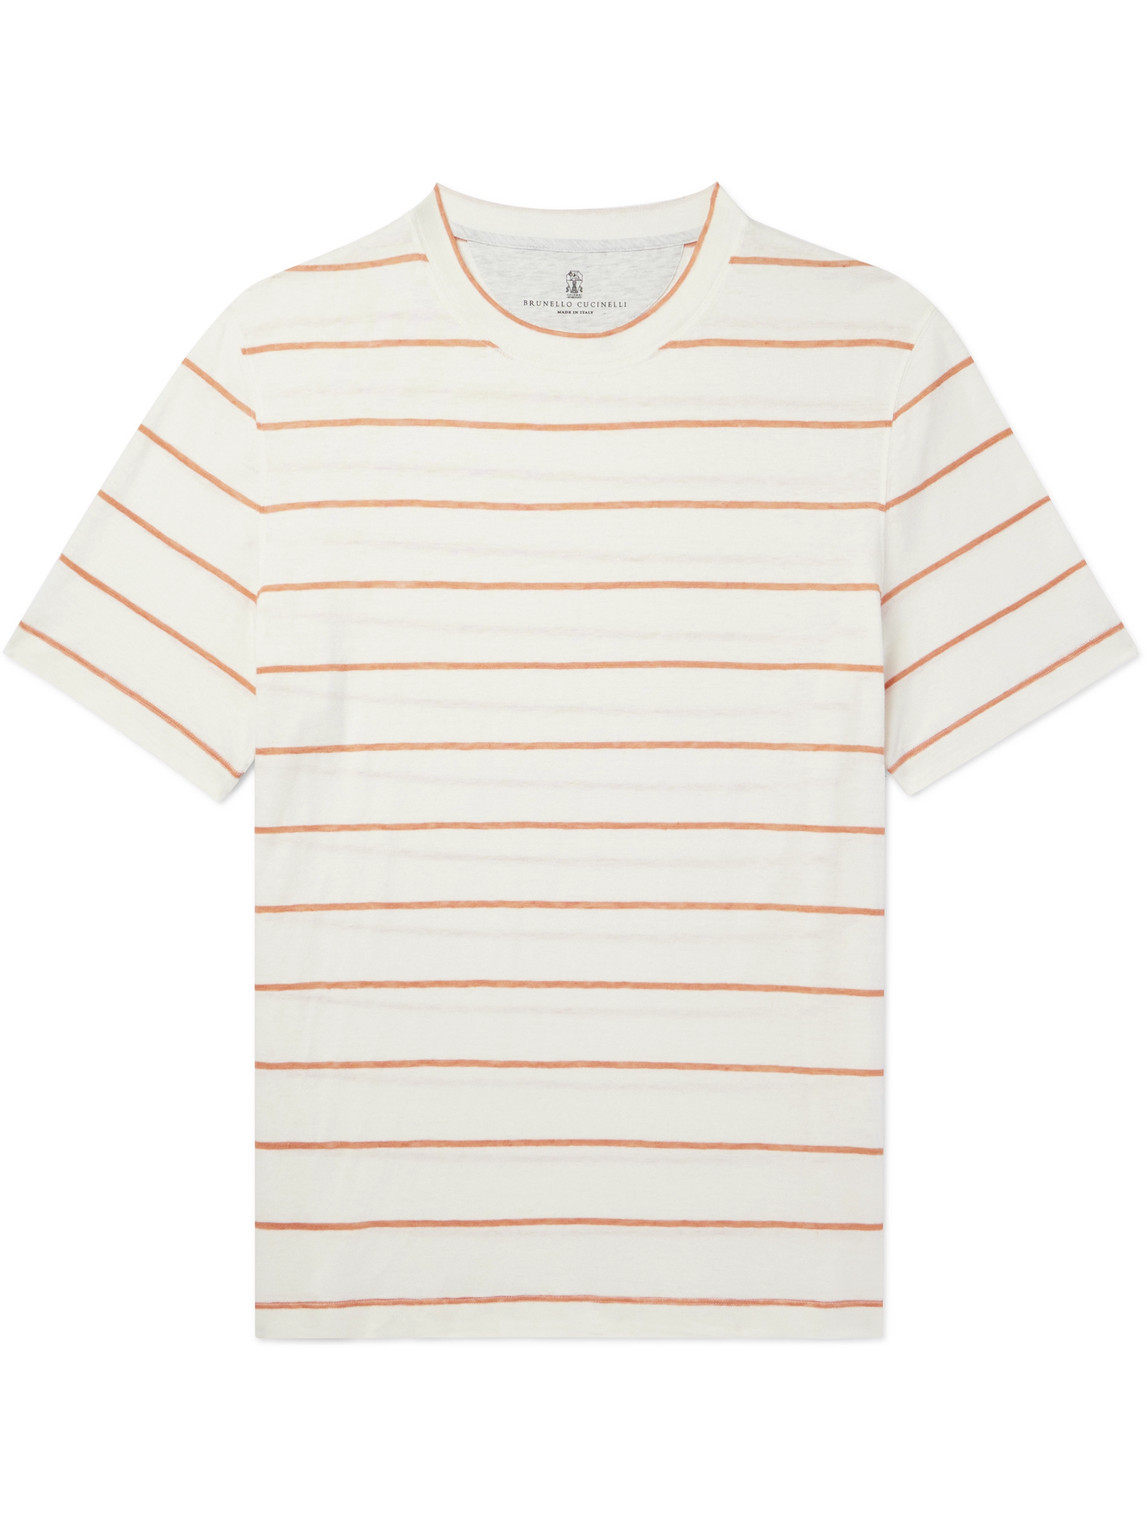 Brunello Cucinelli - Striped Linen and Cotton-Blend T-Shirt - Men - Neutrals - XS von Brunello Cucinelli